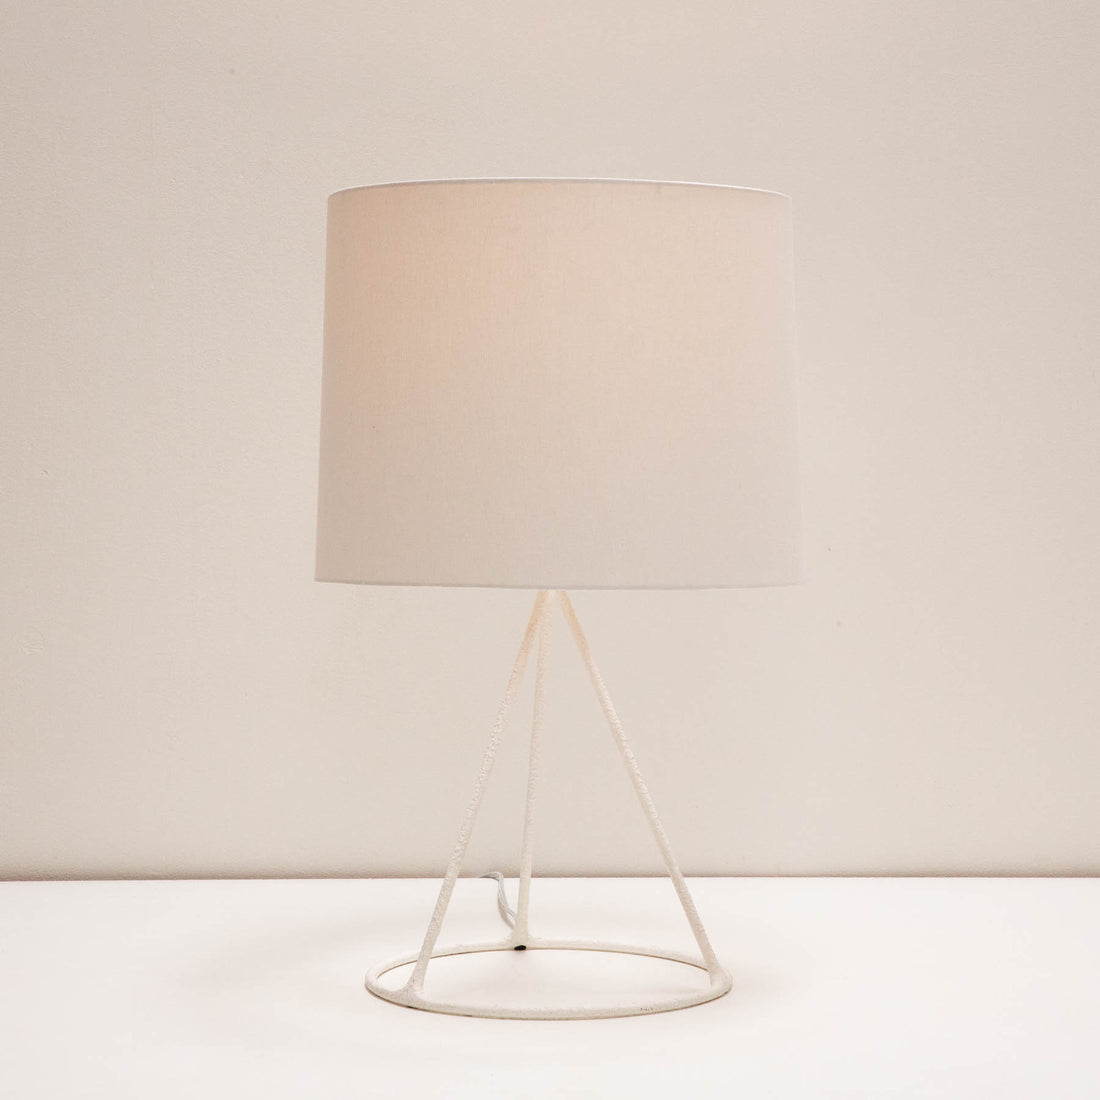 White Tripod Table Lamp